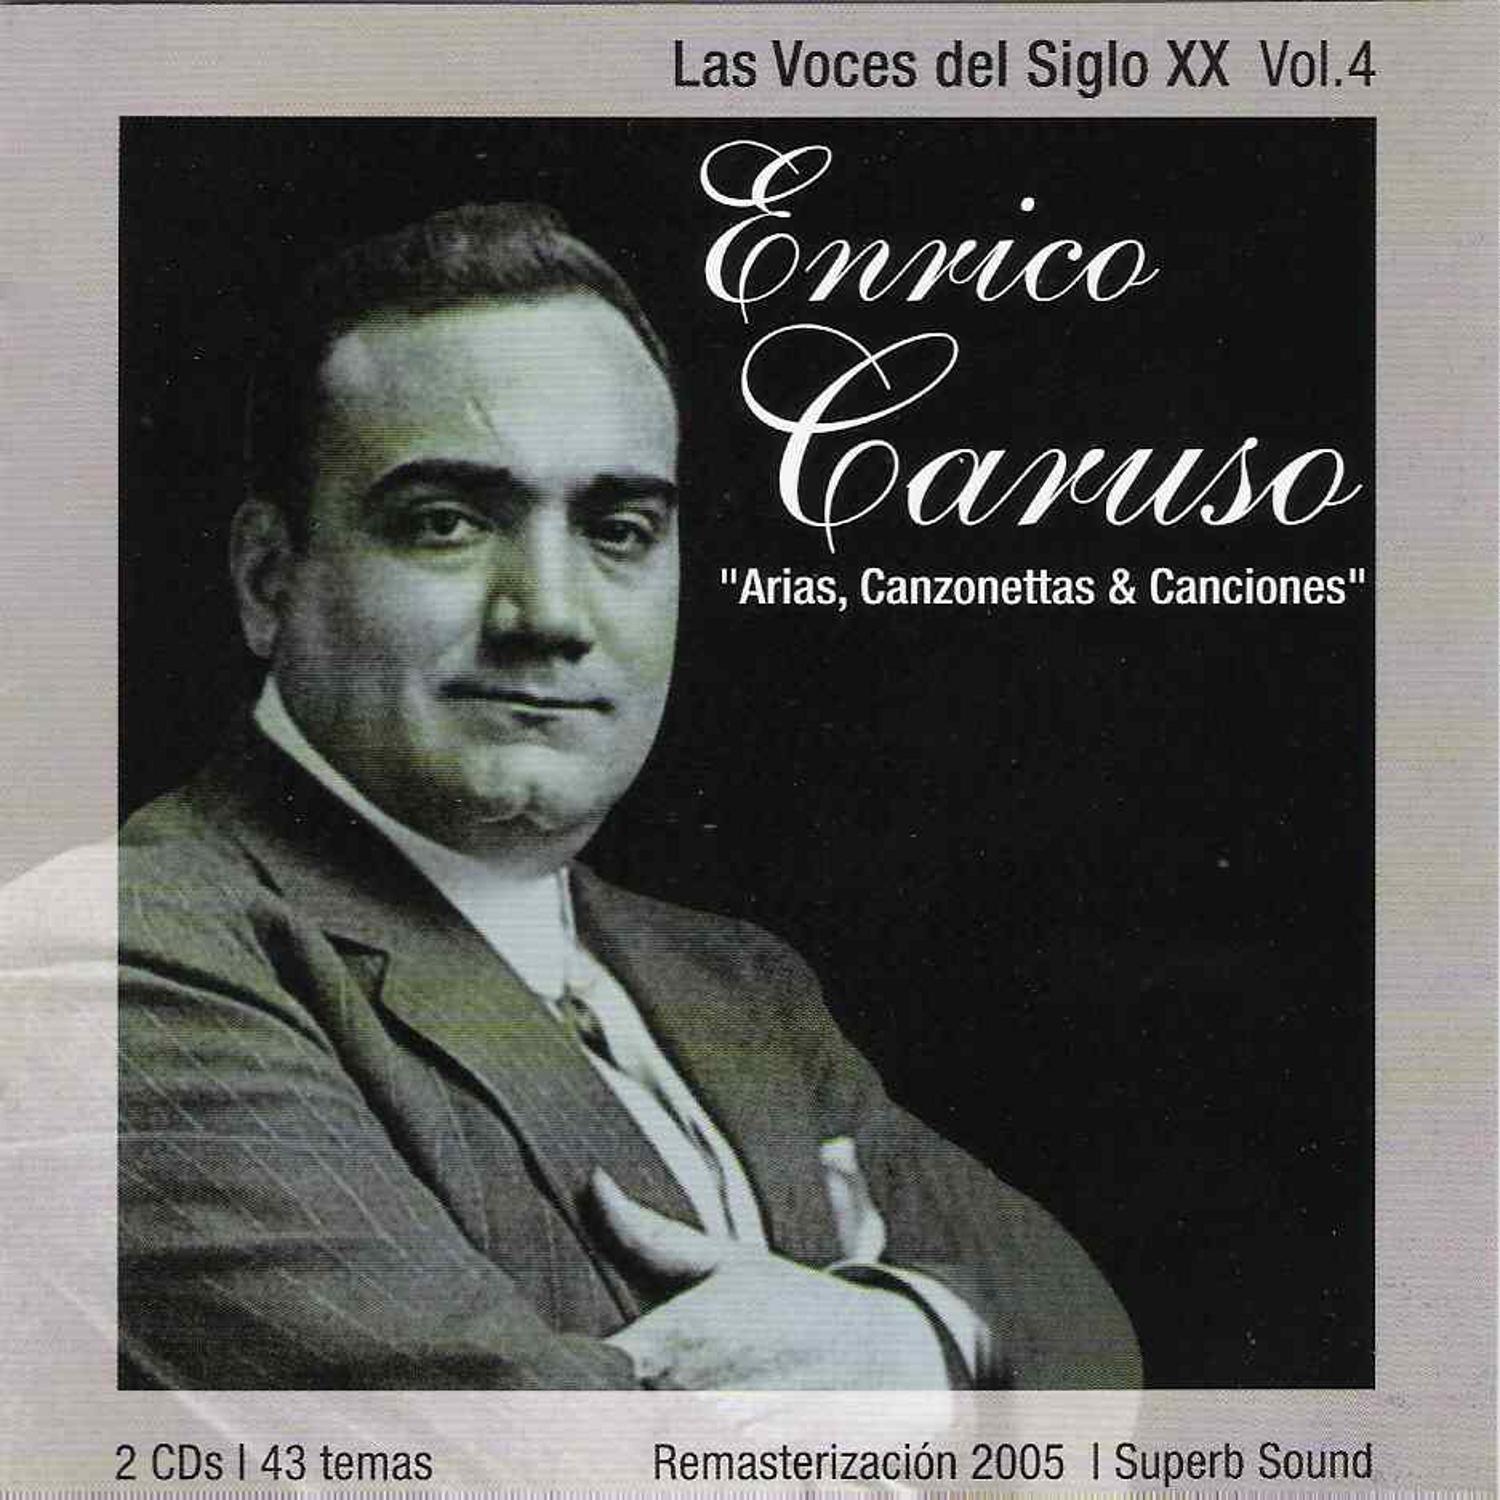 Las Voces Del Siglo XX Vol.4 - "Arias, Canzonettas & Canciones"